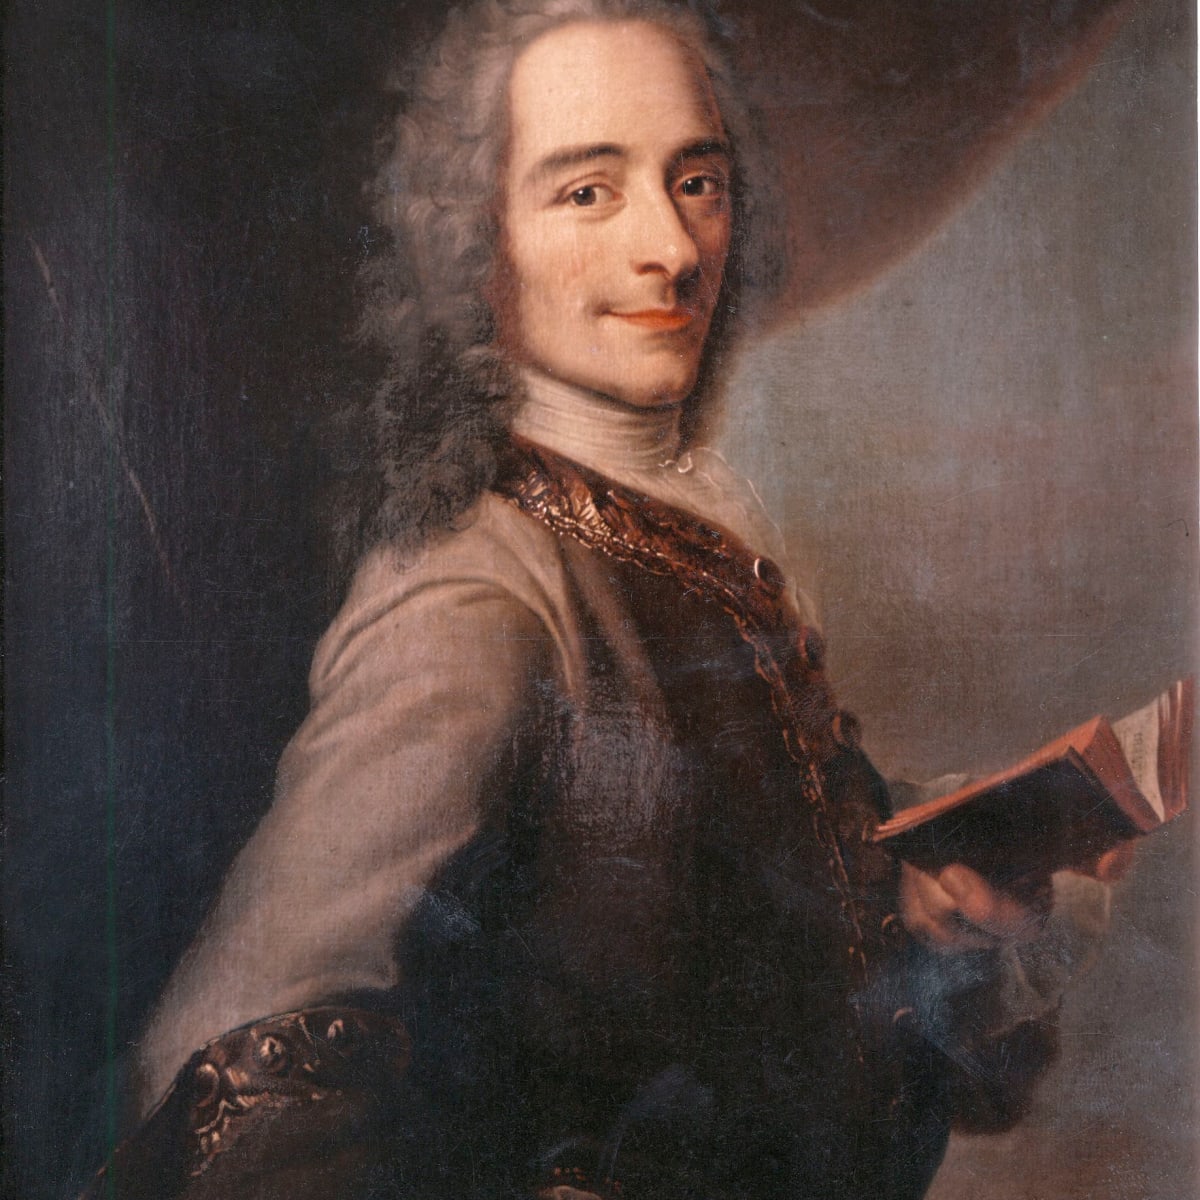 Voltaire s-a temut tot timpul de cenzură